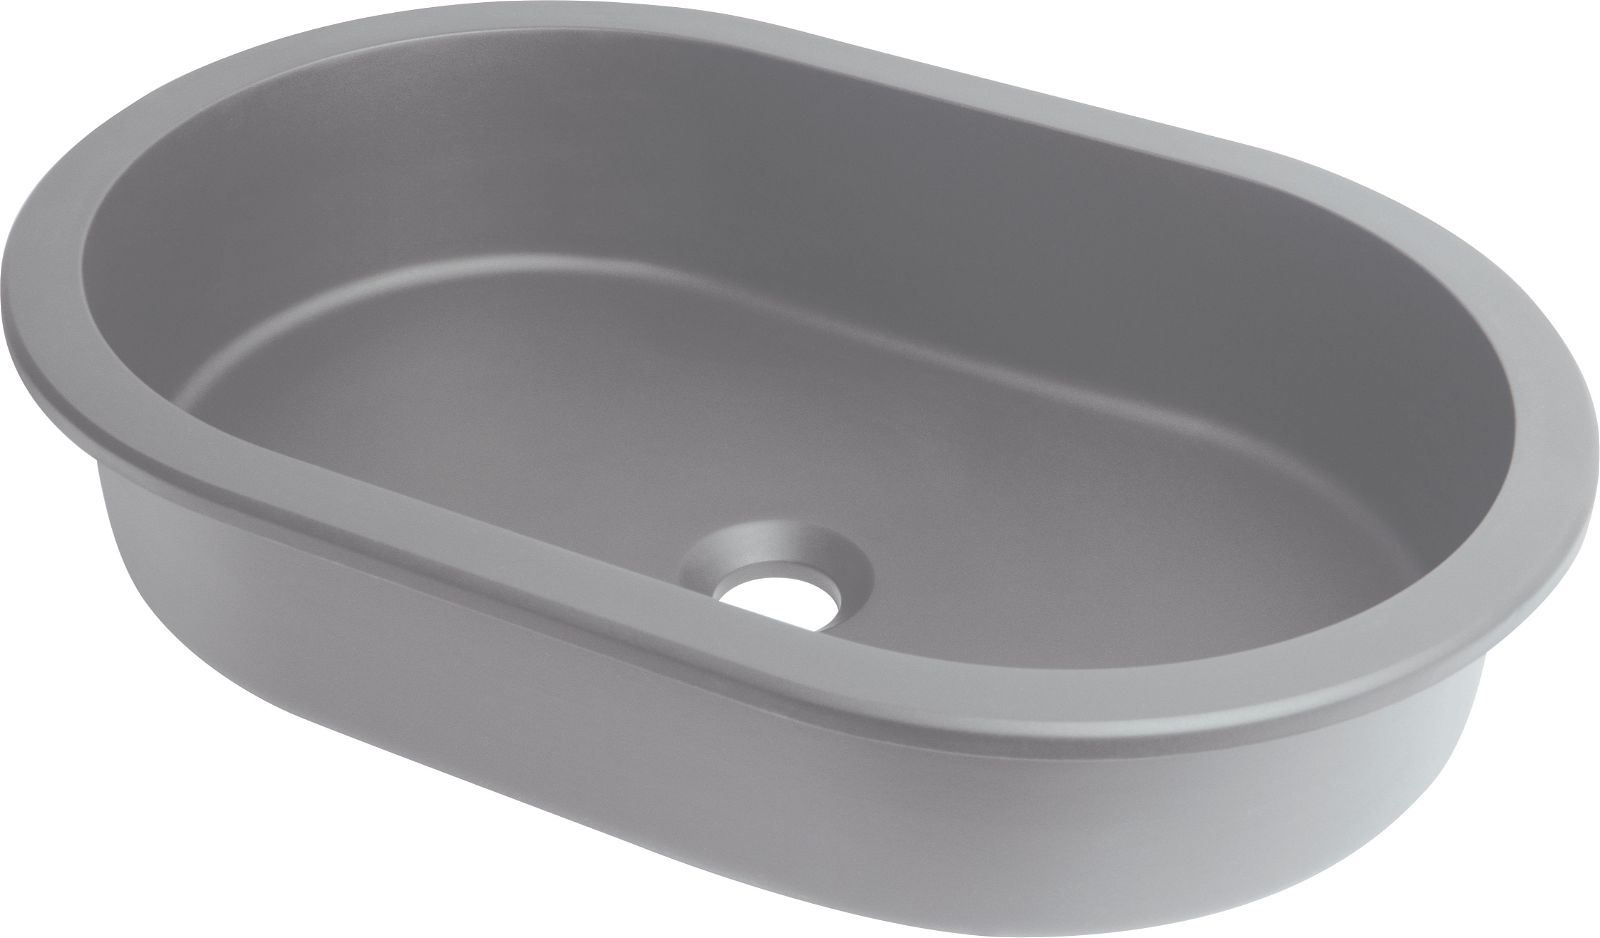 Granite washbasin, undermount/inset, oval - CQS_SU6U - Główne zdjęcie produktowe